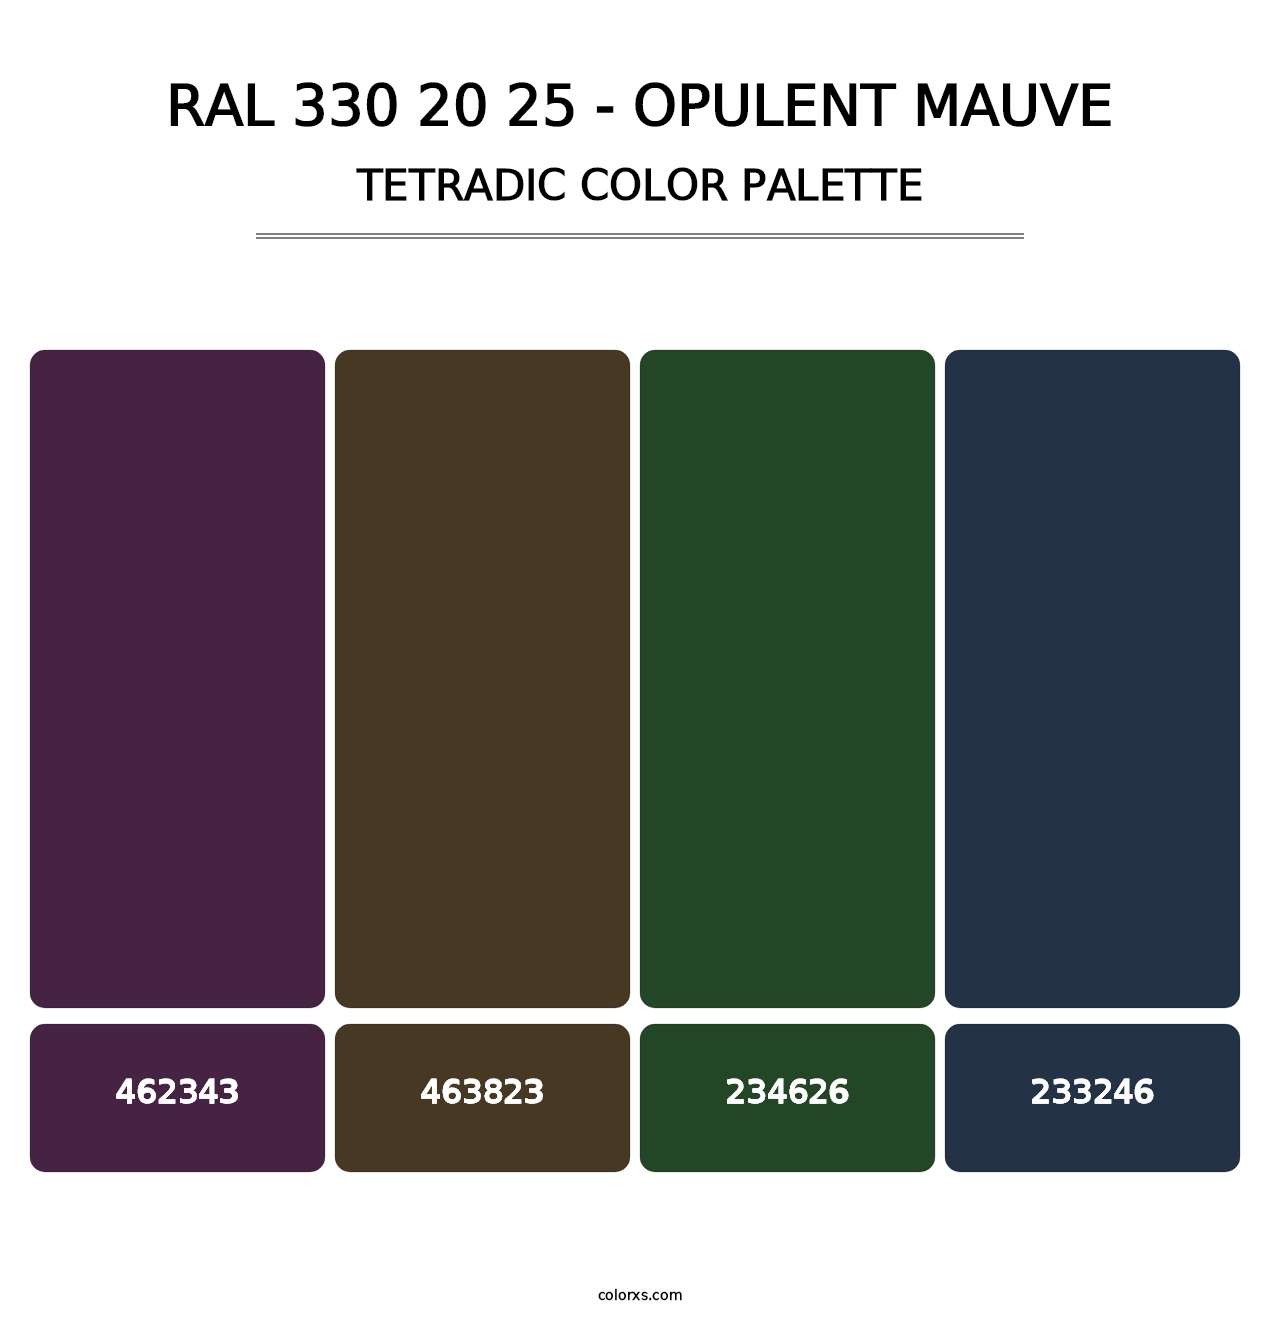 RAL 330 20 25 - Opulent Mauve - Tetradic Color Palette